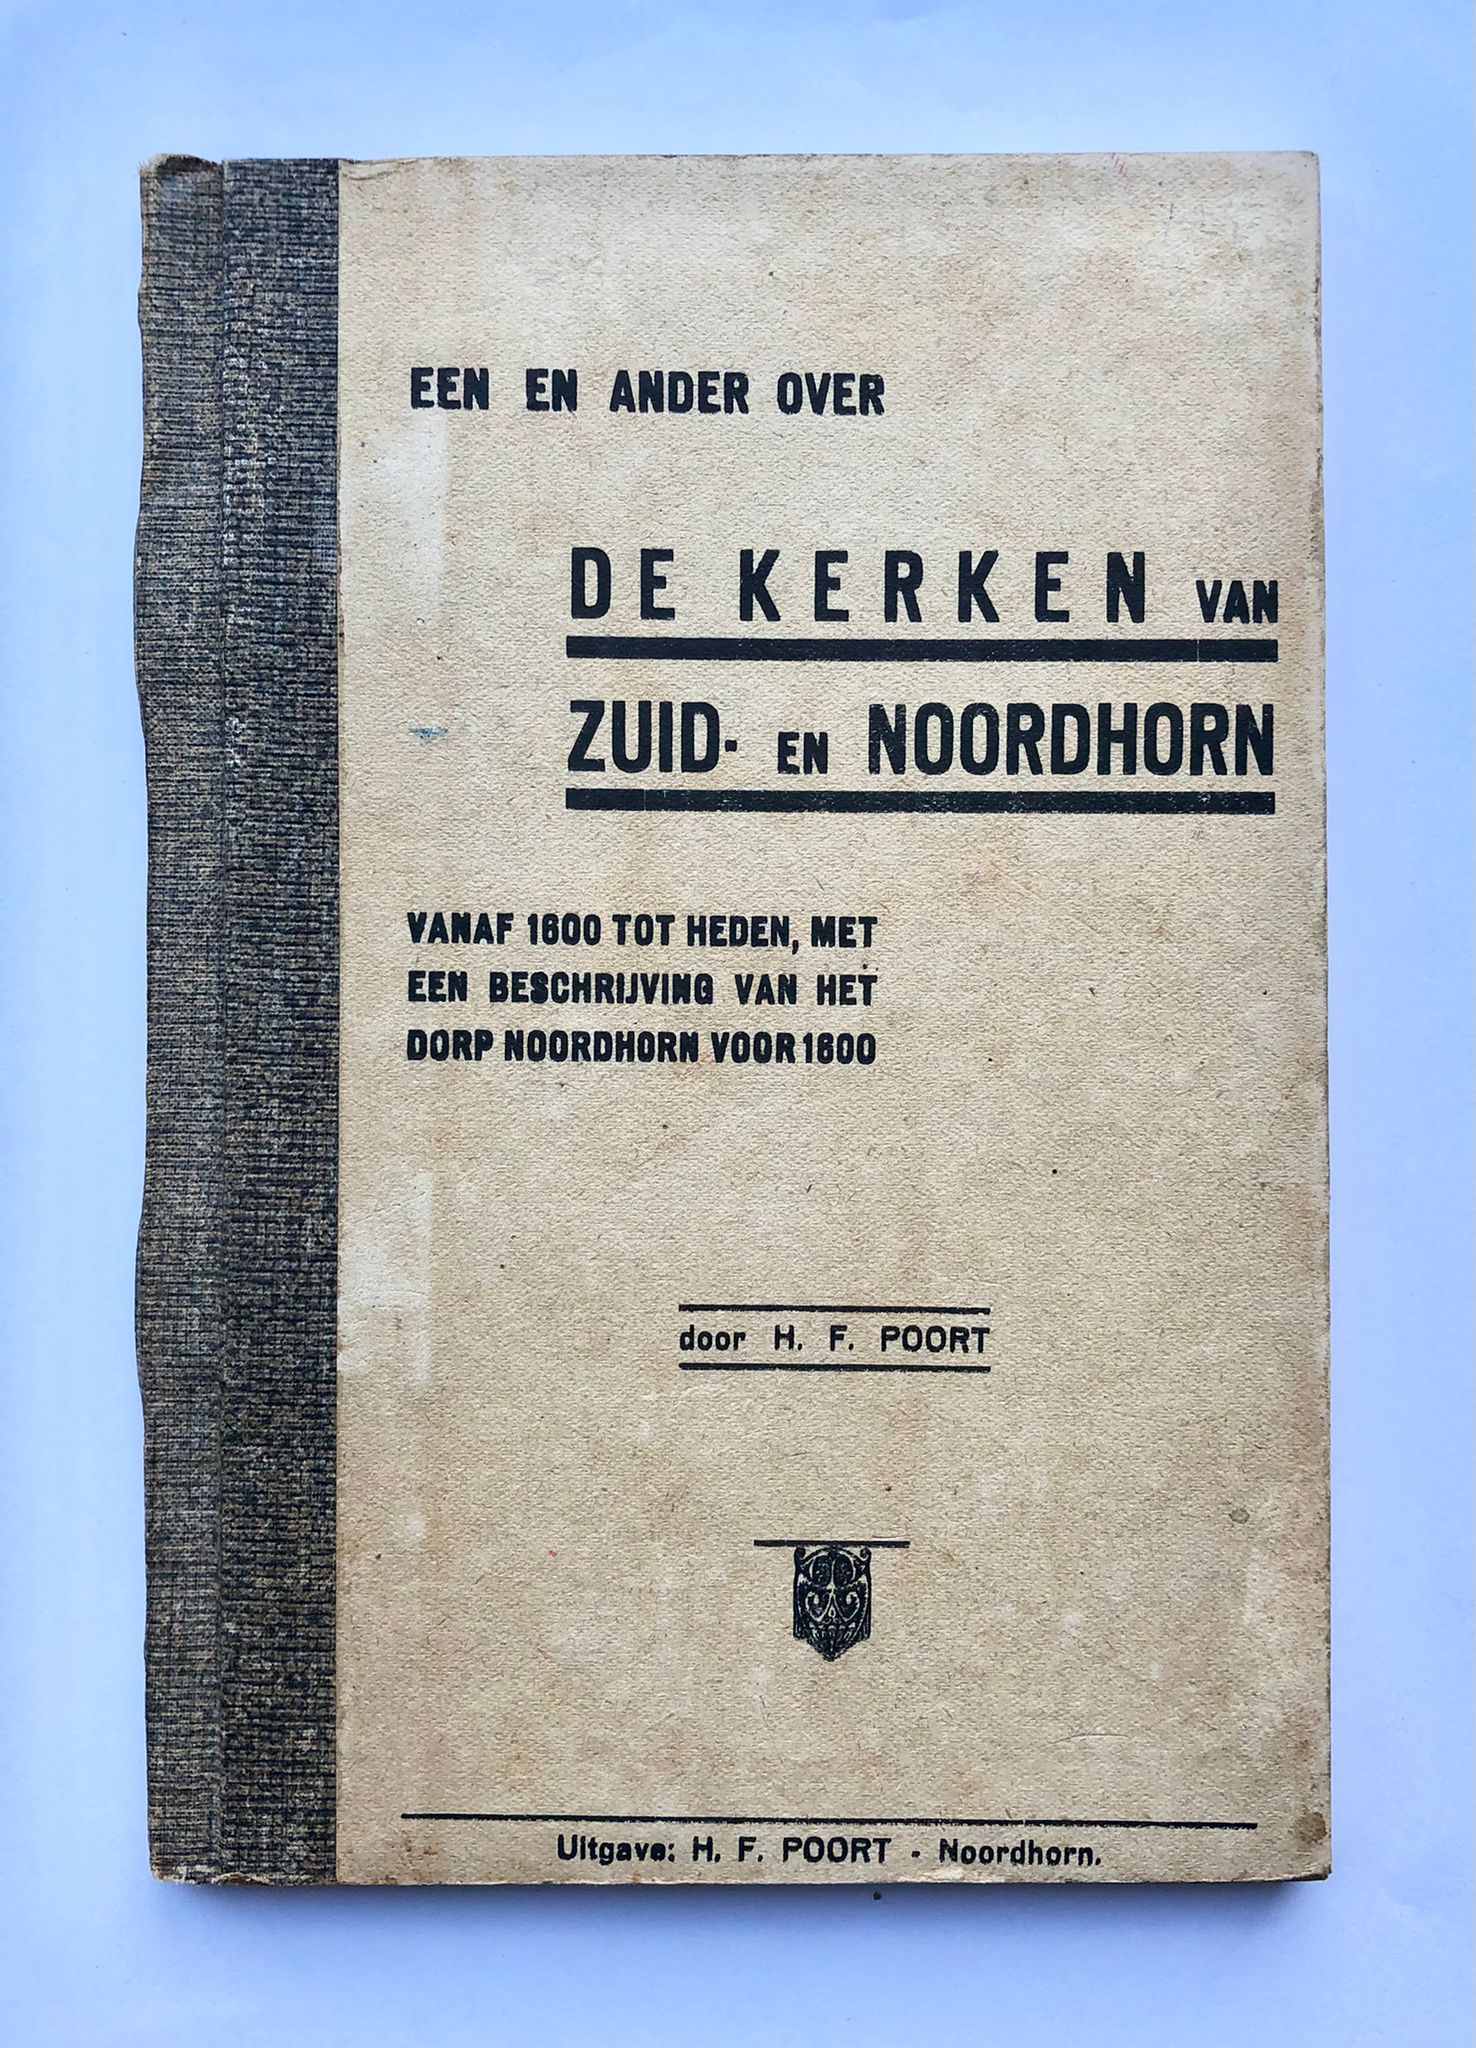 [Groningen, Noordhorn 1935] Een en ander over de Kerken van Zuid- en Noordhorn, vanaf 1600 tot heden, met een beschrijving van het dorp Noordhorn voor 1600, Uitgave: H. F. Poort, Noordhorn, 1935, 39 pp.